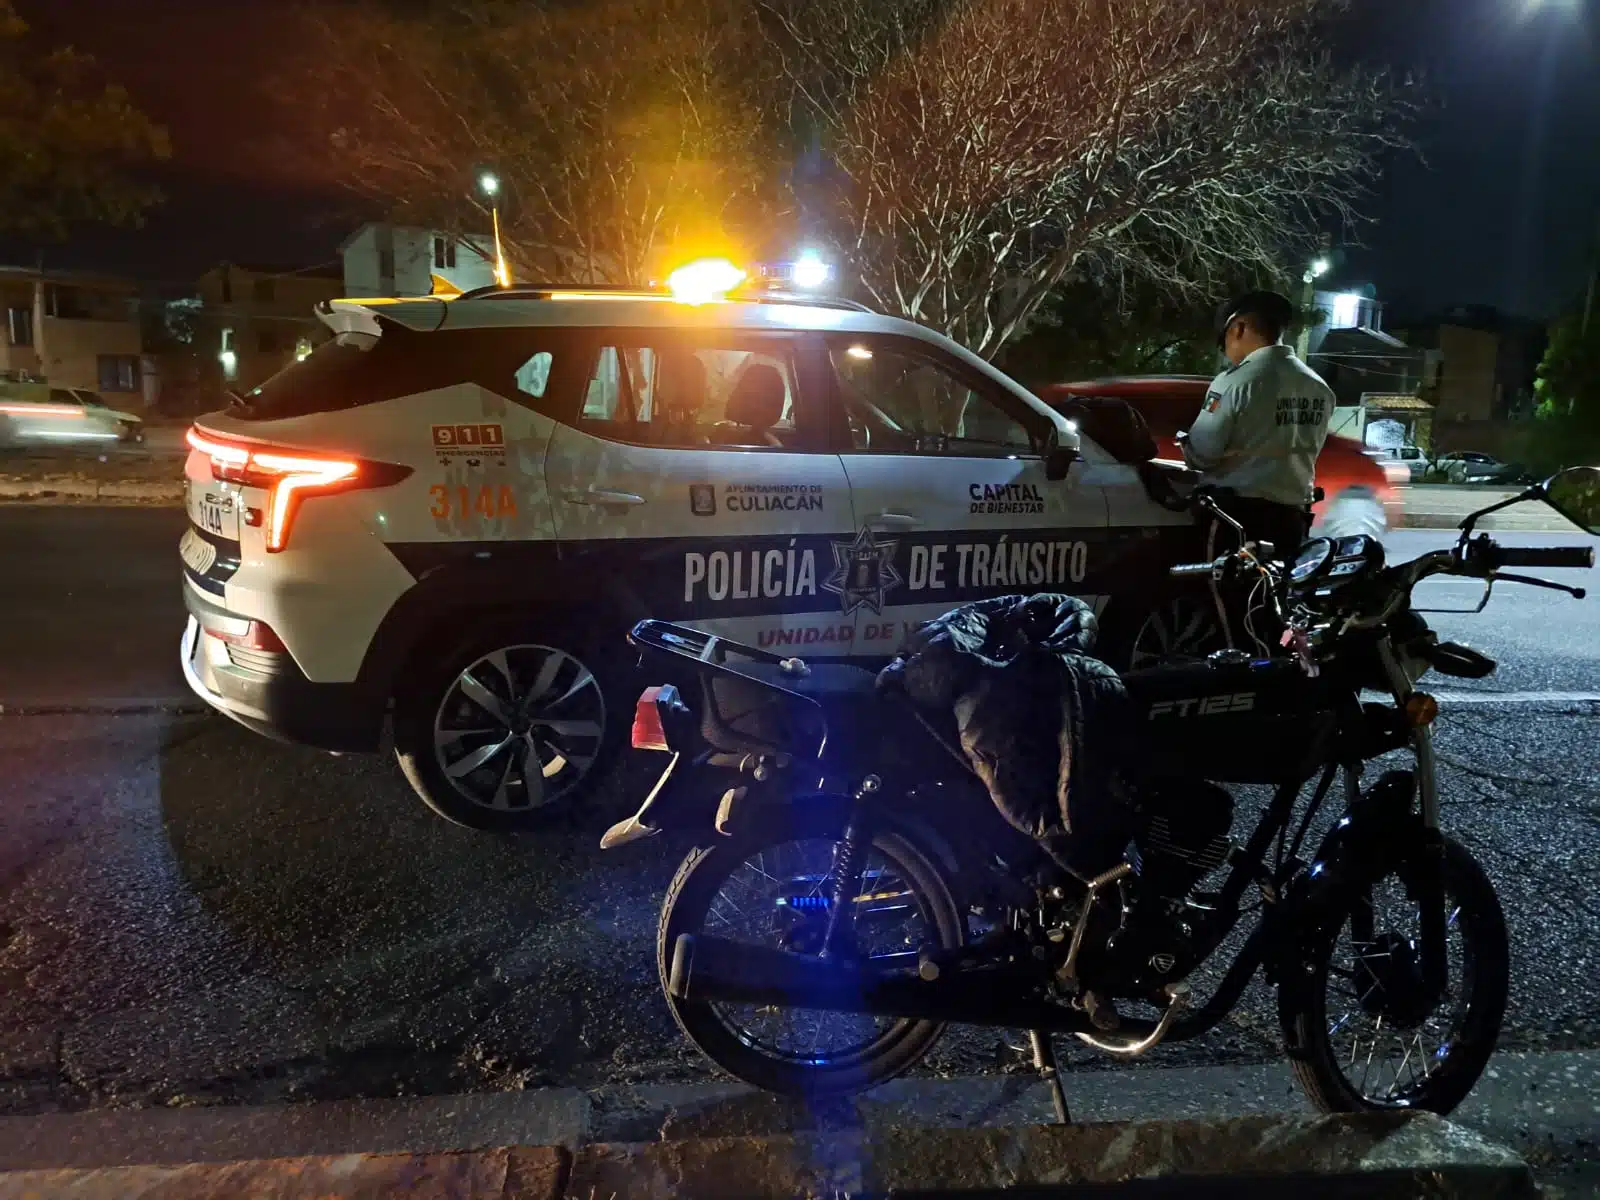 Patrulla y elemento de la Policía de Tránsito de Culiacán junto a una motocicleta en el lugar del accidente